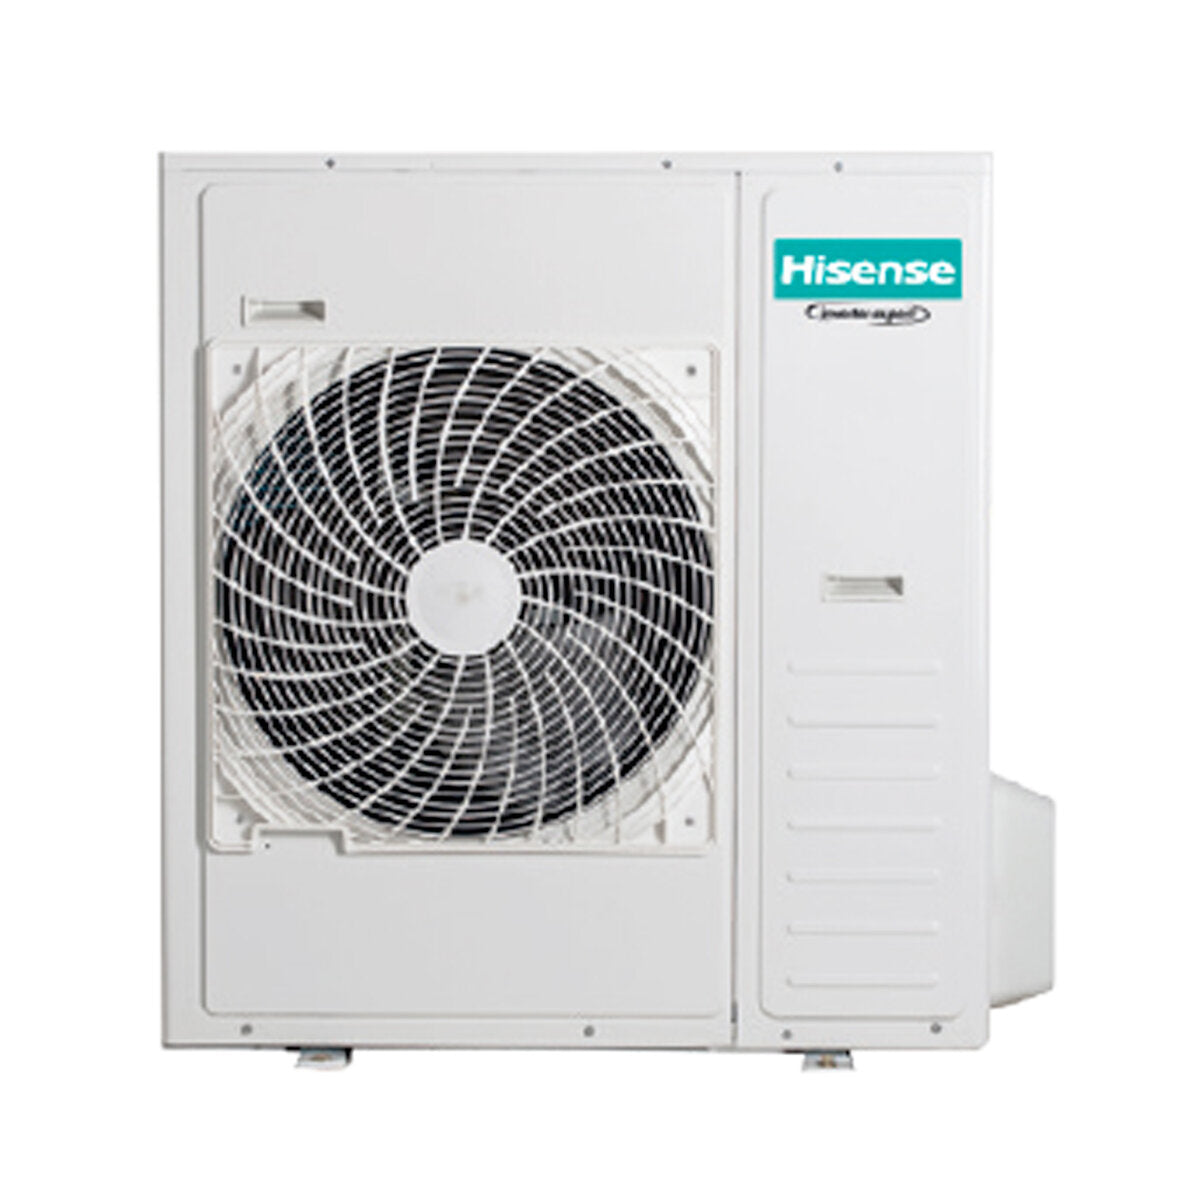 Hisense Hi-Comfort penta climatiseur split 9000 + 9000 + 12000 + 12000 + 12000 BTU wifi inverter unité extérieure 12,5 kW